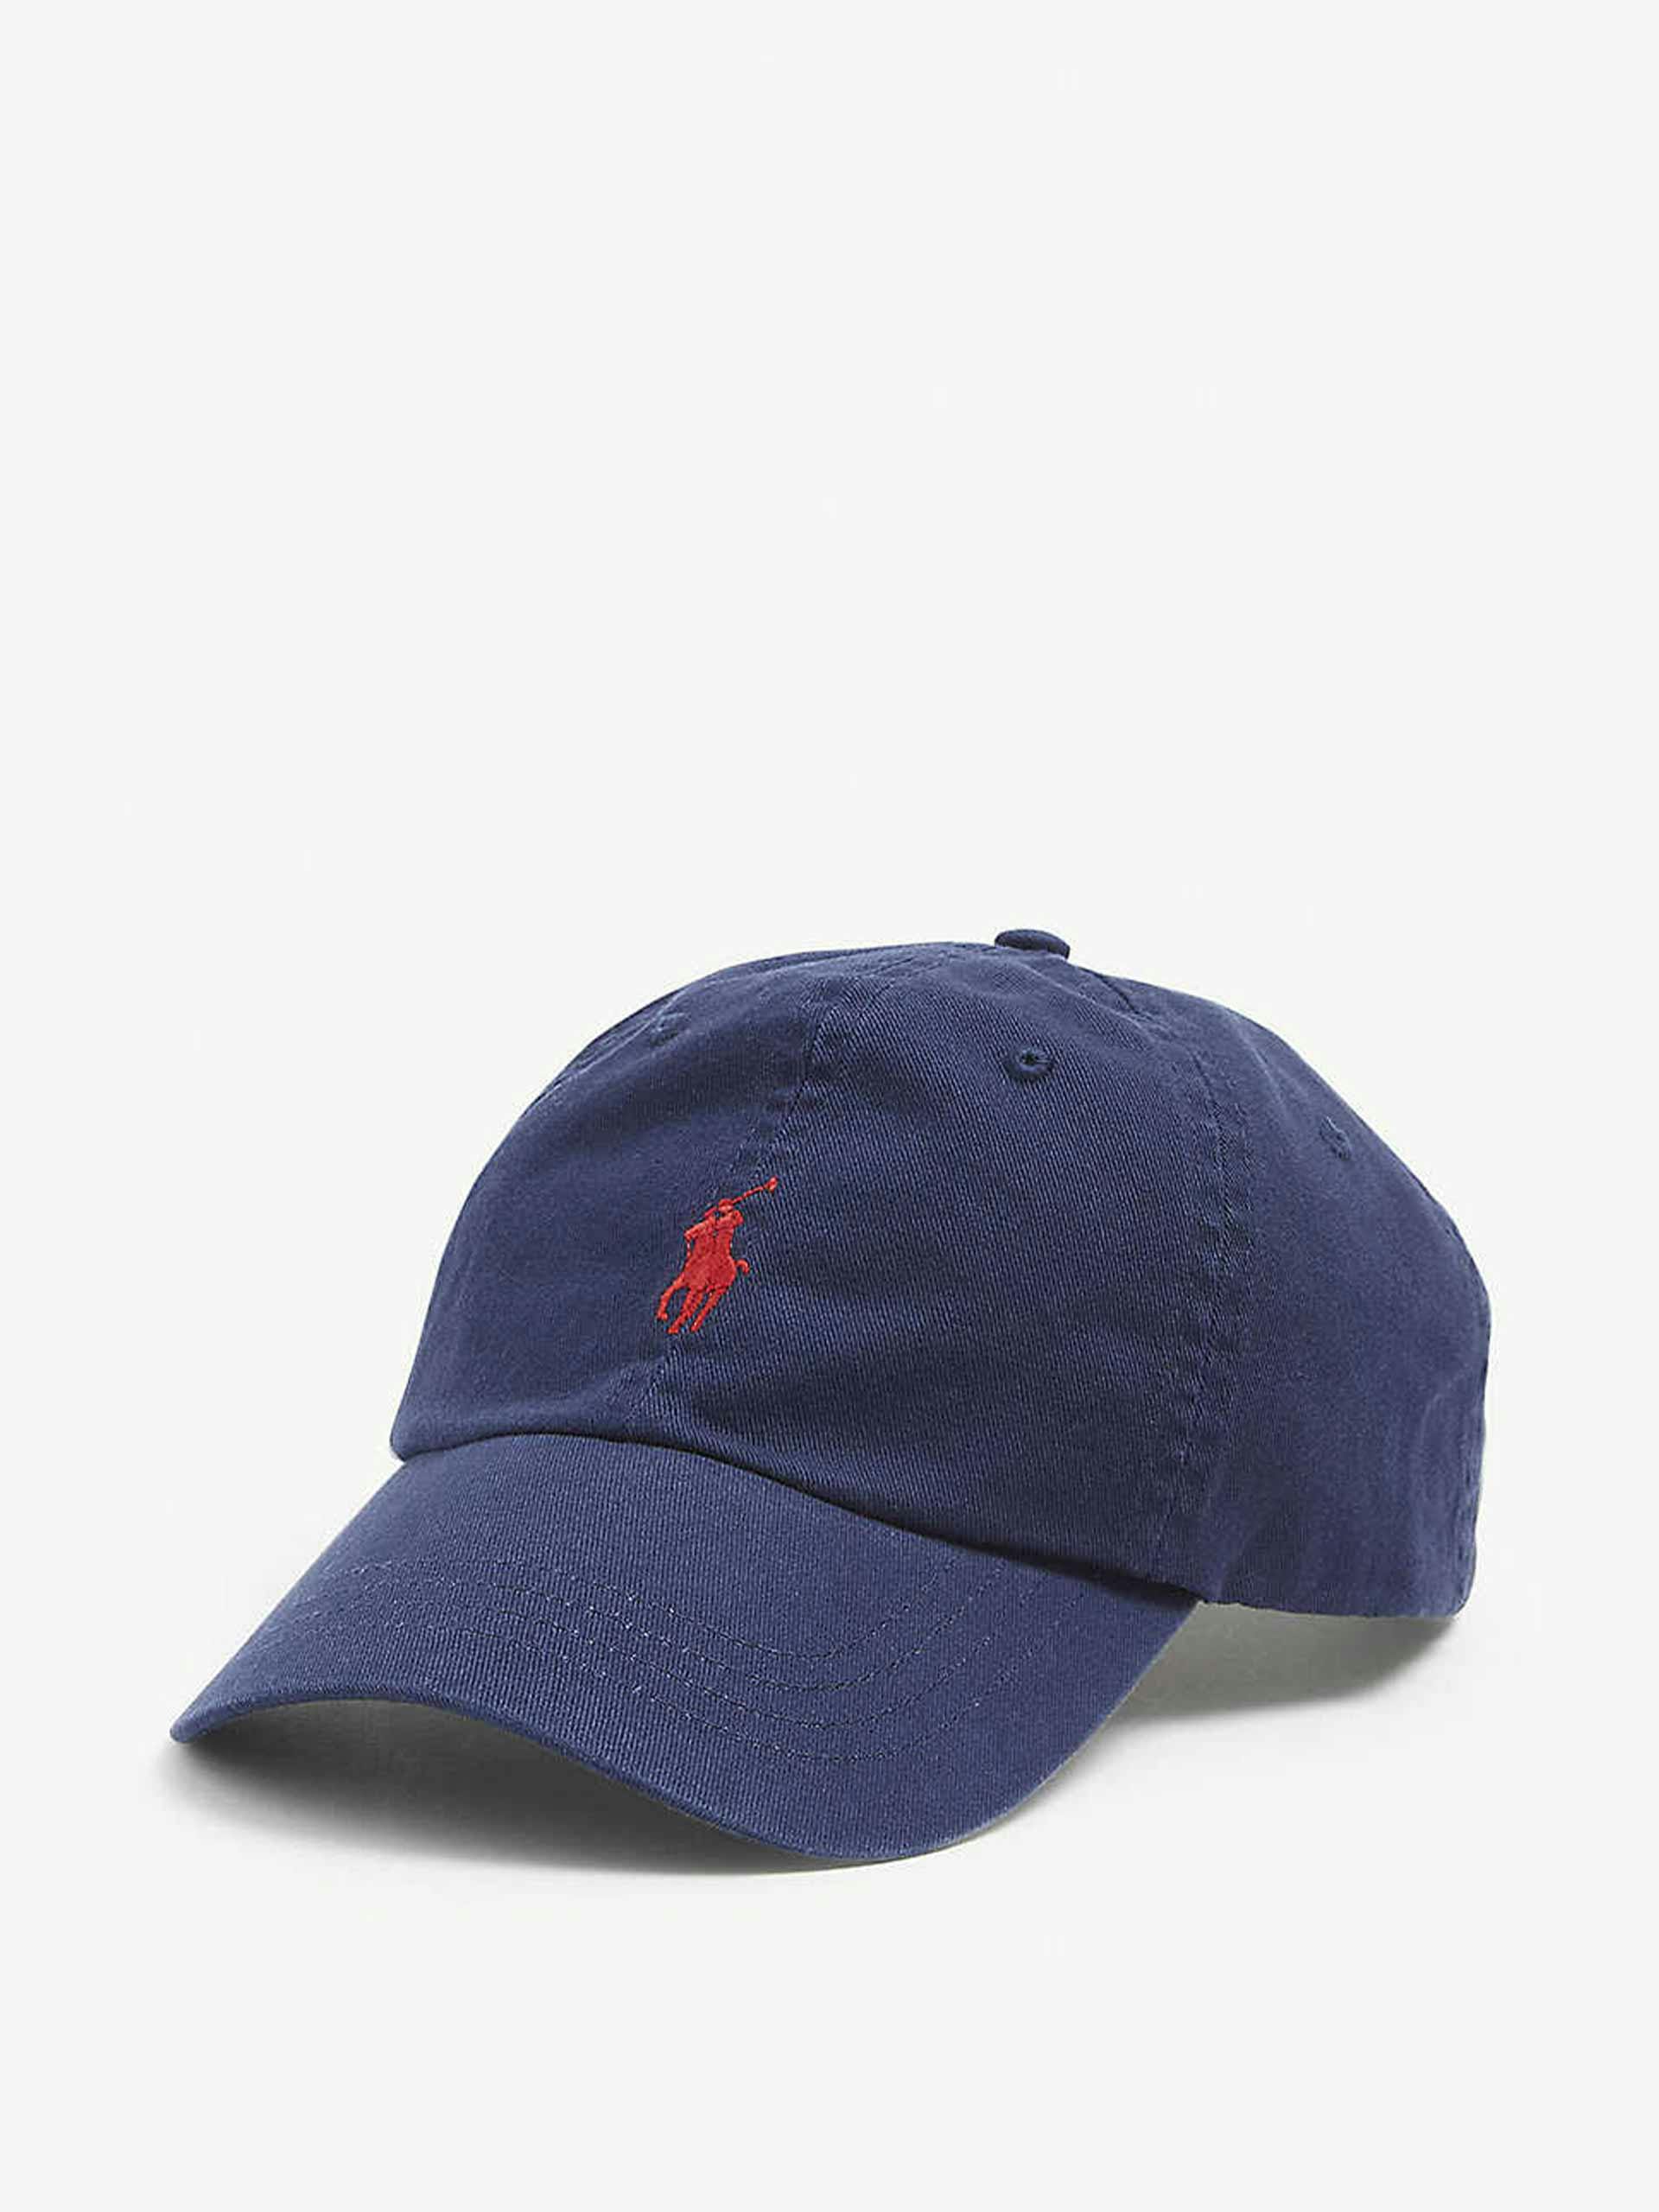 Navy blue cotton cap